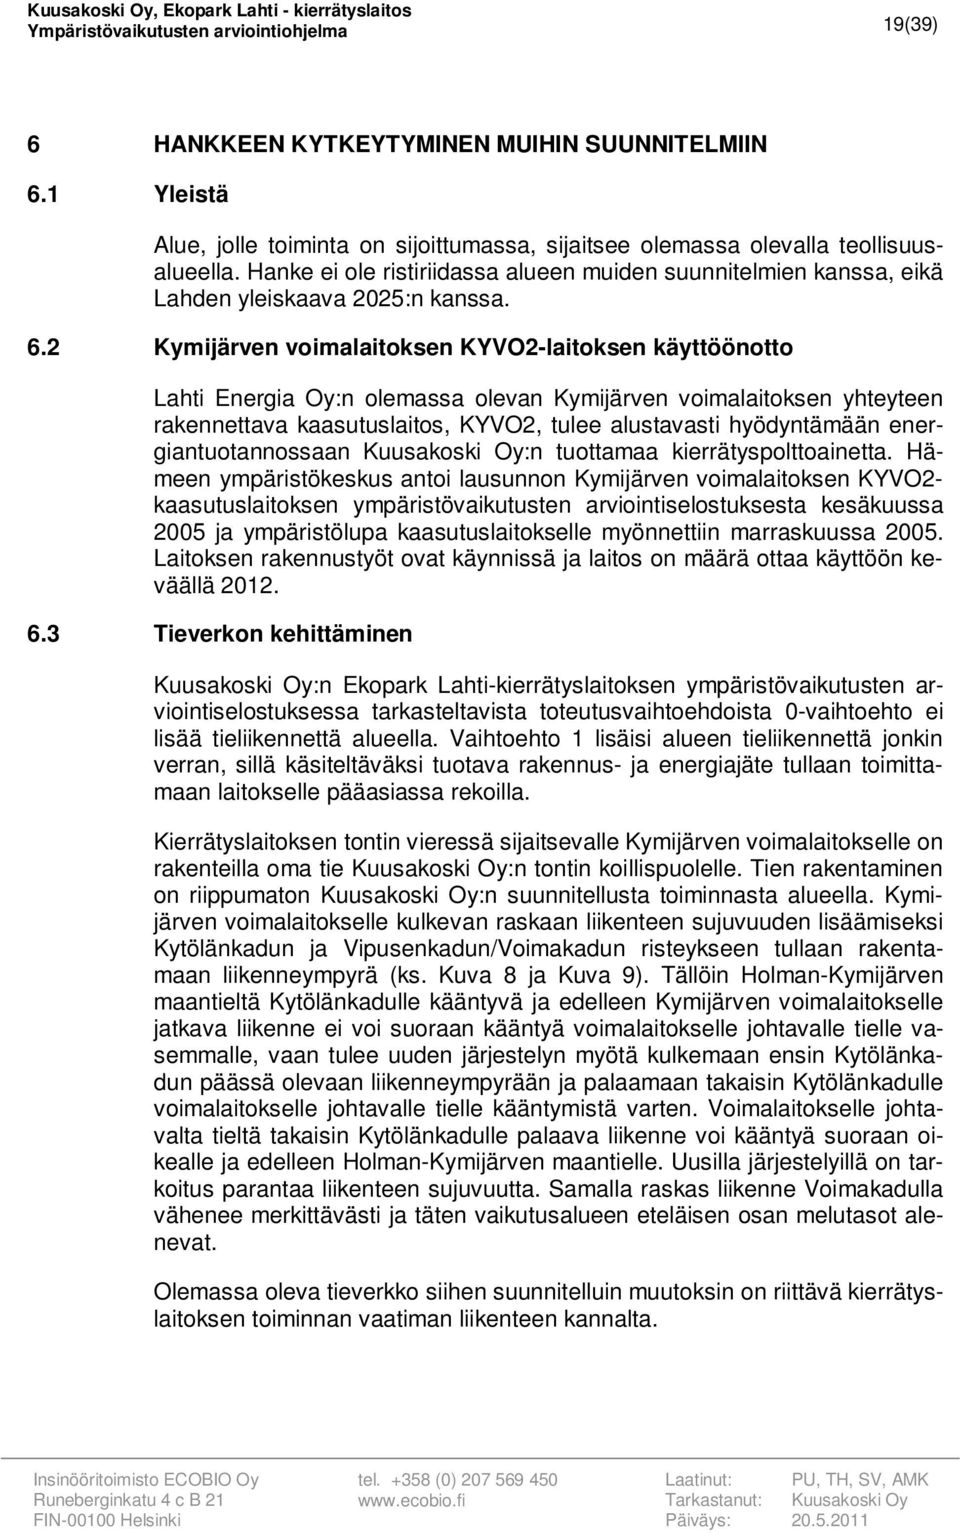 2 Kymijärven voimalaitoksen KYVO2-laitoksen käyttöönotto Lahti Energia Oy:n olemassa olevan Kymijärven voimalaitoksen yhteyteen rakennettava kaasutuslaitos, KYVO2, tulee alustavasti hyödyntämään